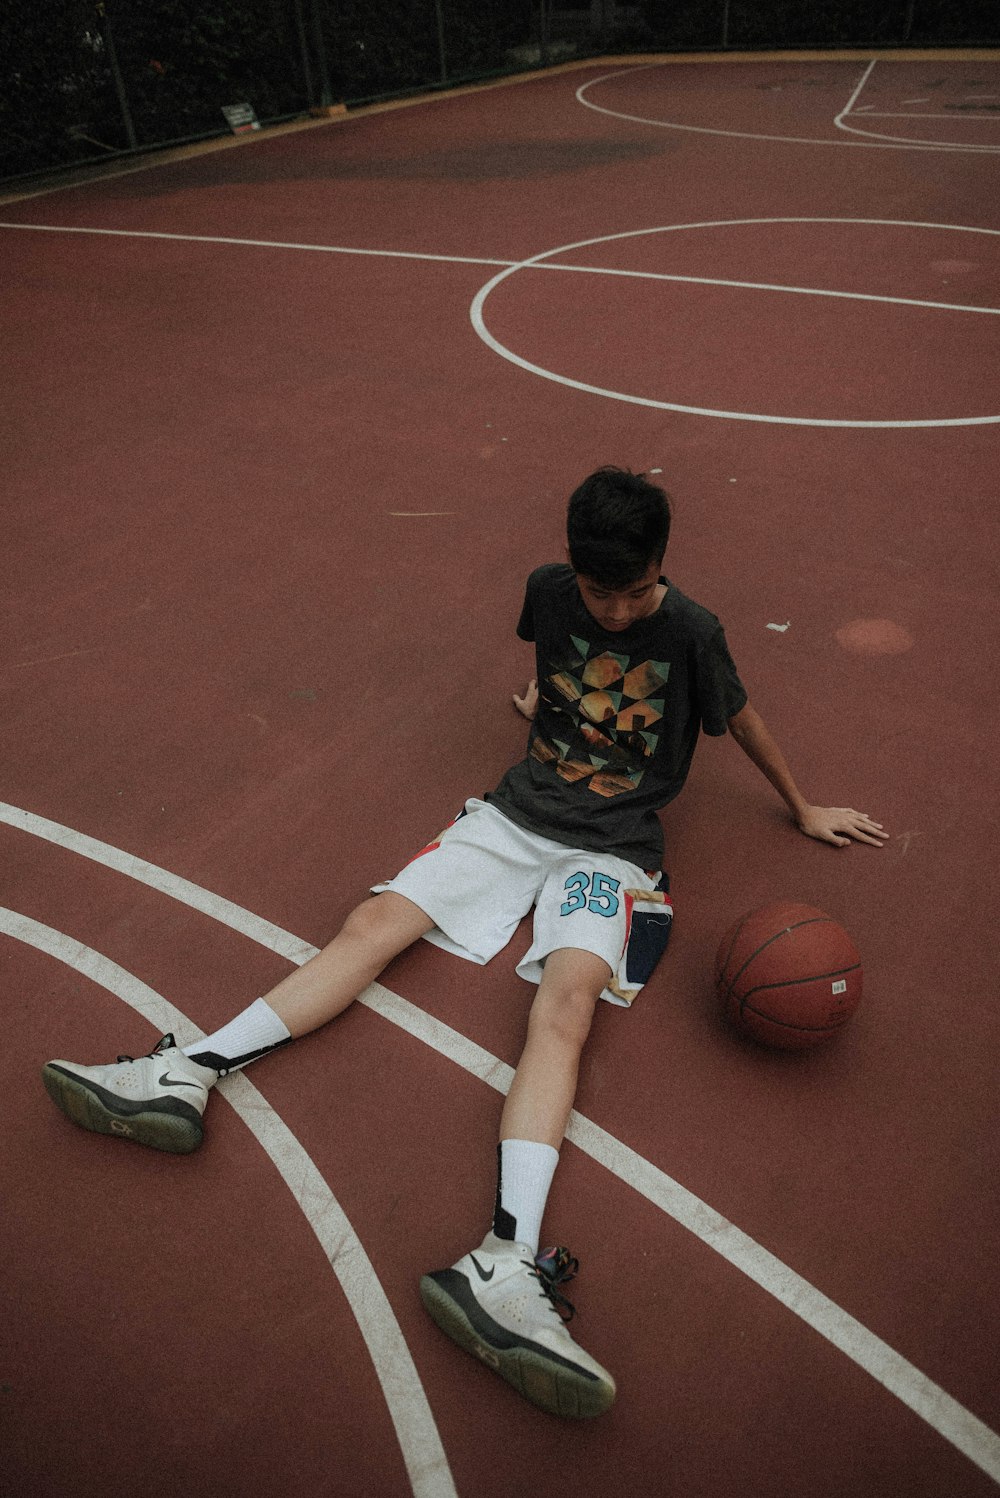 homme allongé sur un terrain de basket-ball regardant le basket-ball